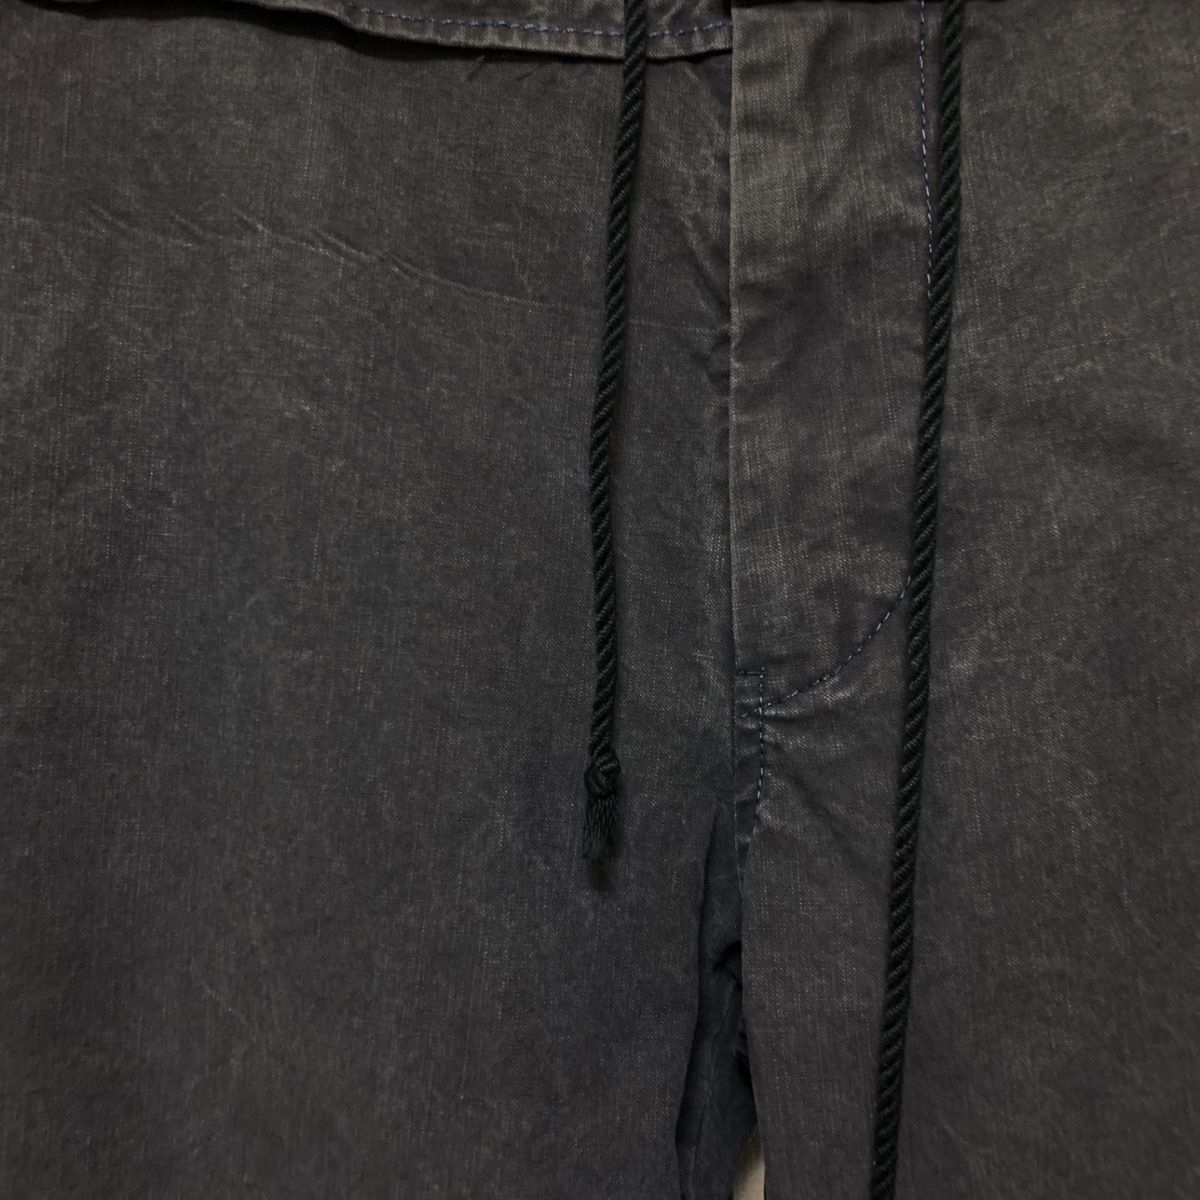 Y's(ワイズ) パンツ サイズ2 M メンズ - ダークグレー クロップド(半端丈) - メルカリ